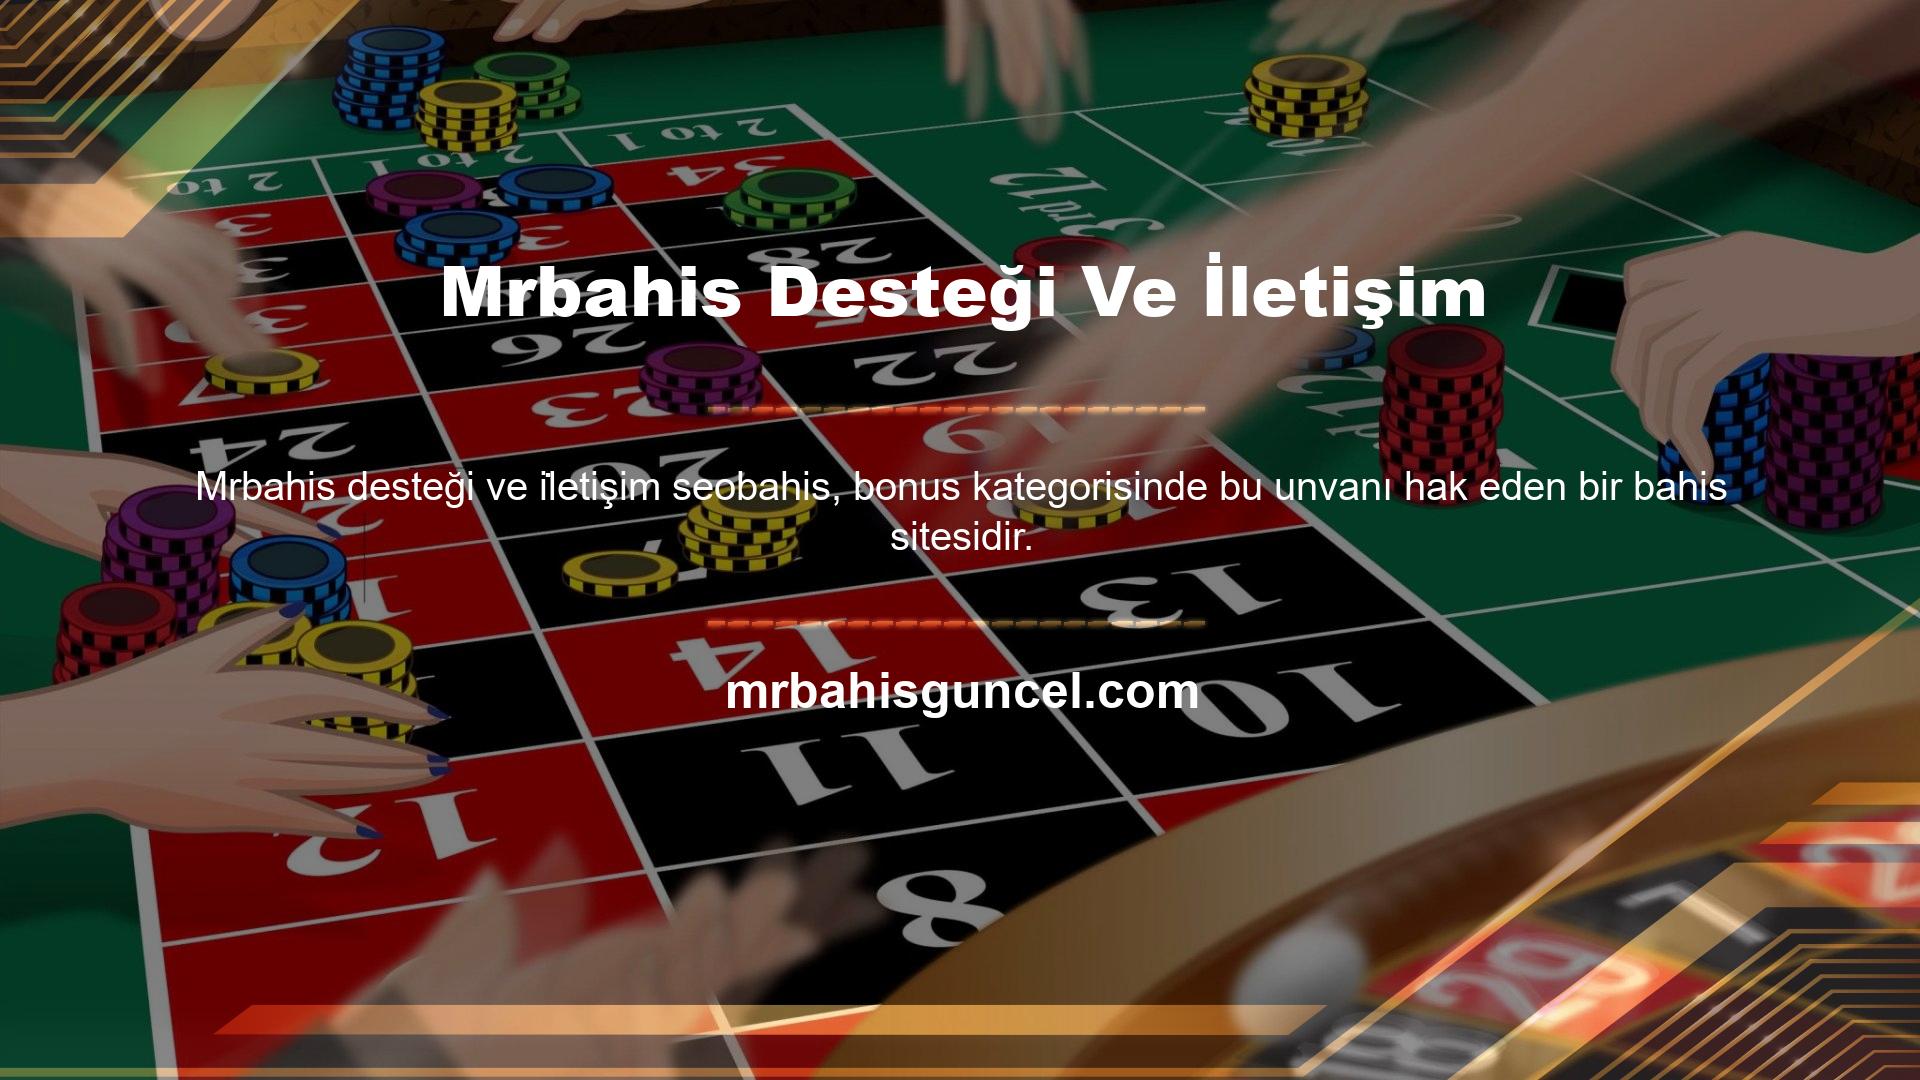 Çevrimiçi casino ve Mrbahis Casino endüstrisi için gerekli bonuslar, Mrbahis casino sitesinin müşteri desteği ve iletişim avantajlarıyla buluşuyor